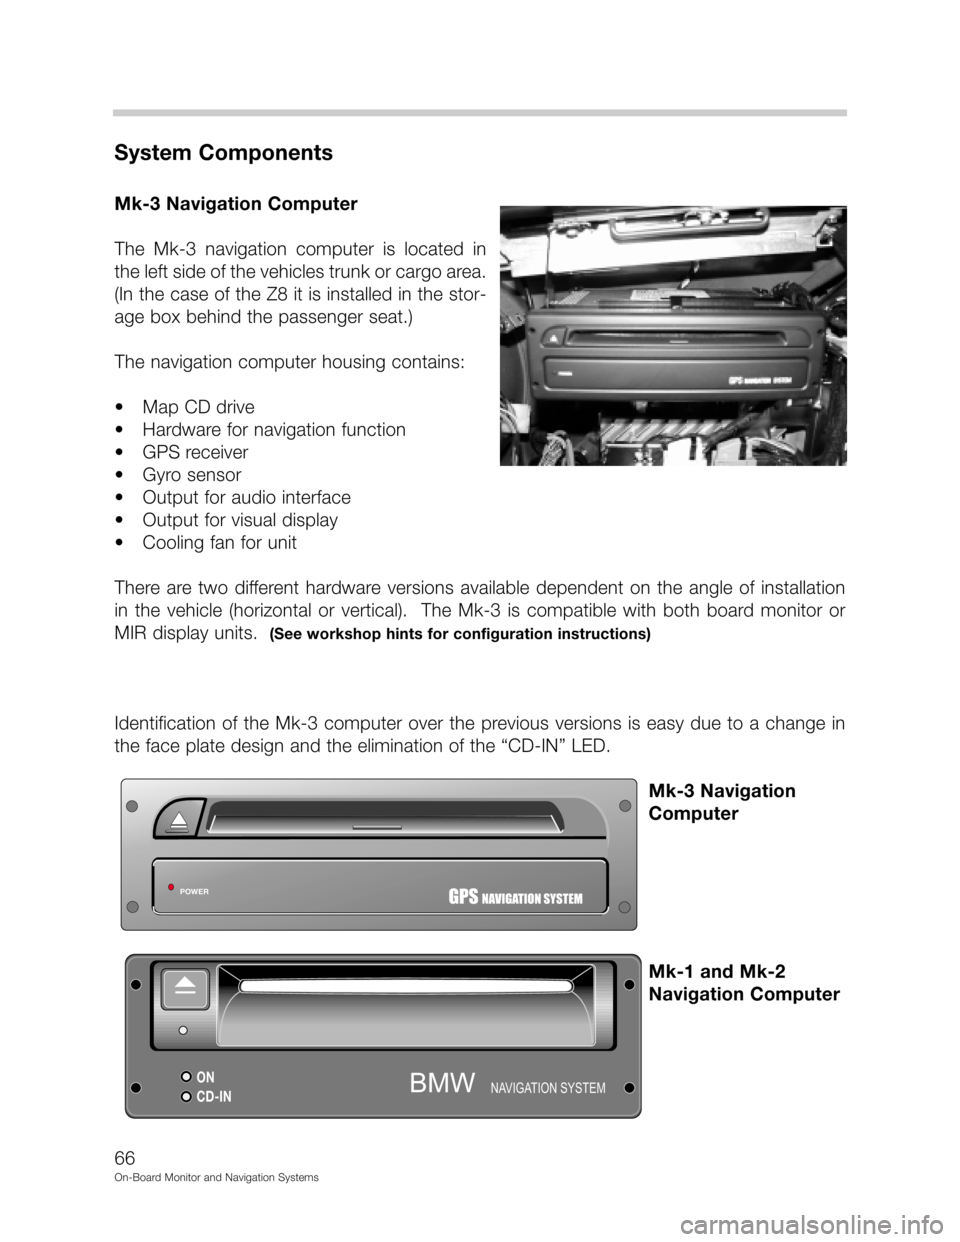 BMW 7 SERIES 1999 E38 On Board Monitor System Workshop Manual DD



"&
(	
-.2./!!
	0", 1" !2./
# 9. 
&
 	
   
&
9
70
